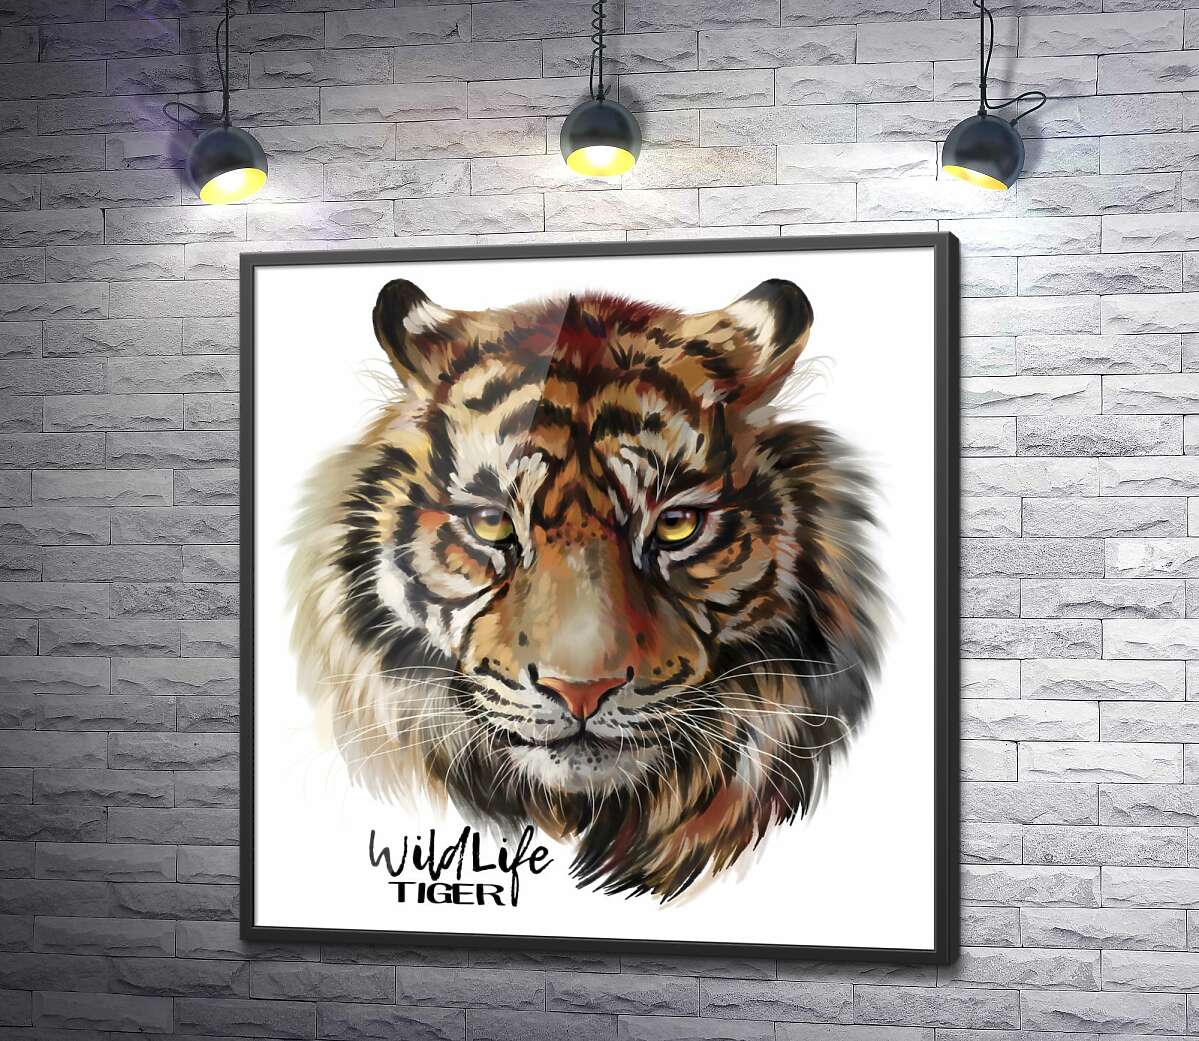 постер Пронзительный взгляд тигра рядом с надписью "wildlife tiger"